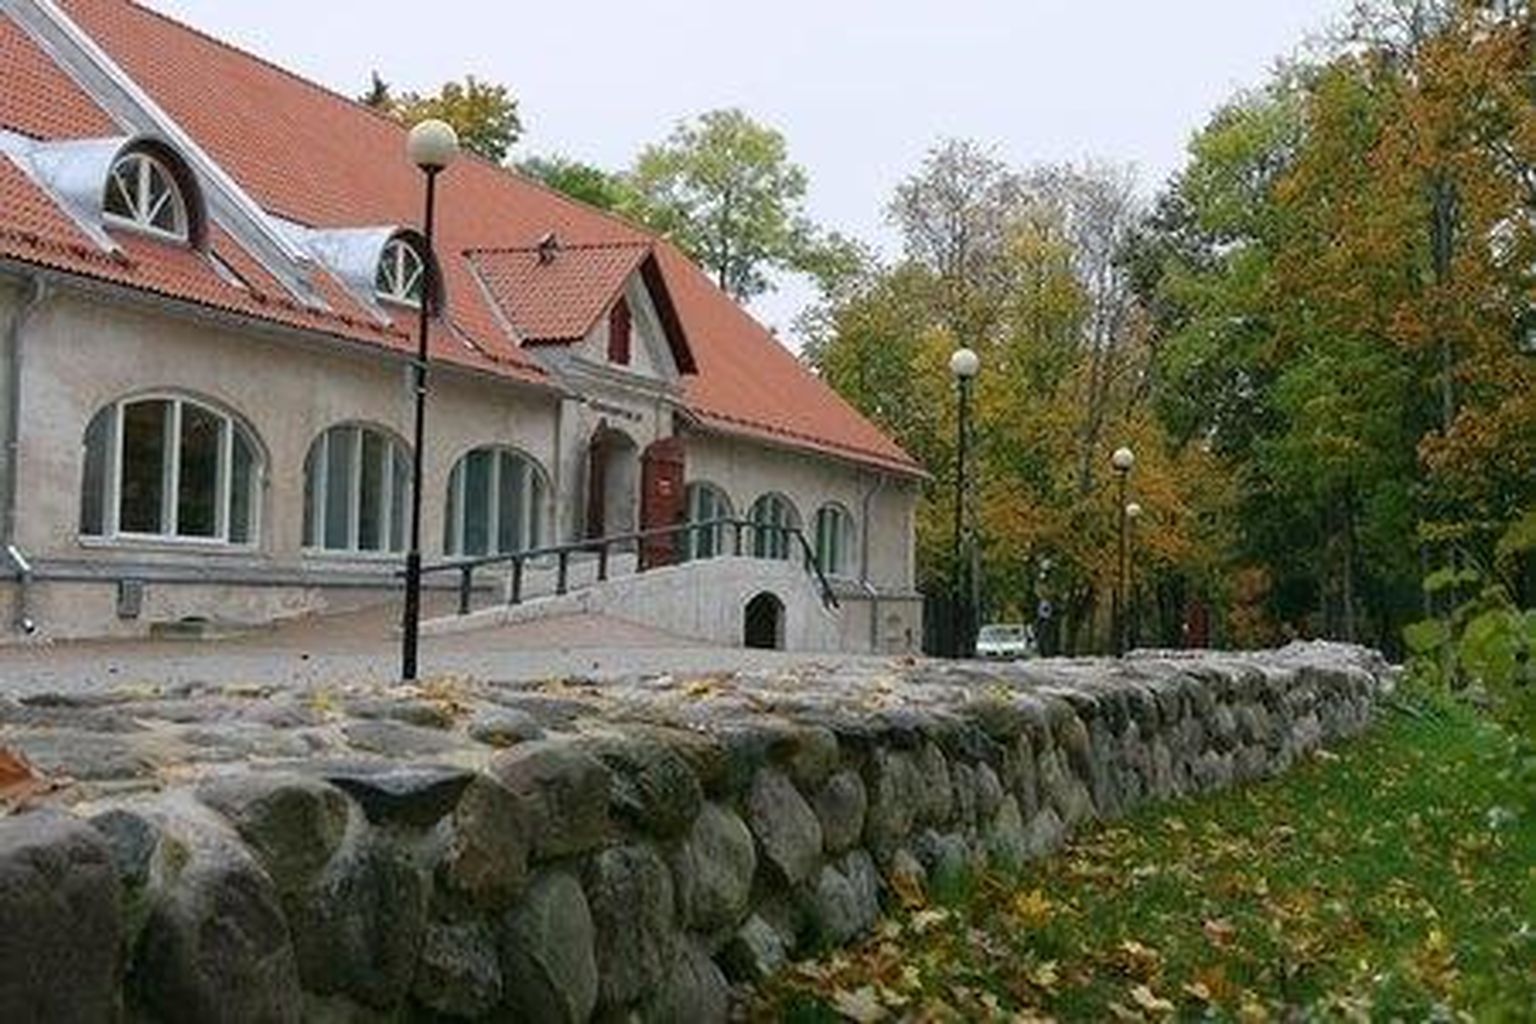 Suurima tegevustoetuse, 45 000 eurot sai Viljandi linnalt järgmiseks aastaks Eesti pärimusmuusika keskus.